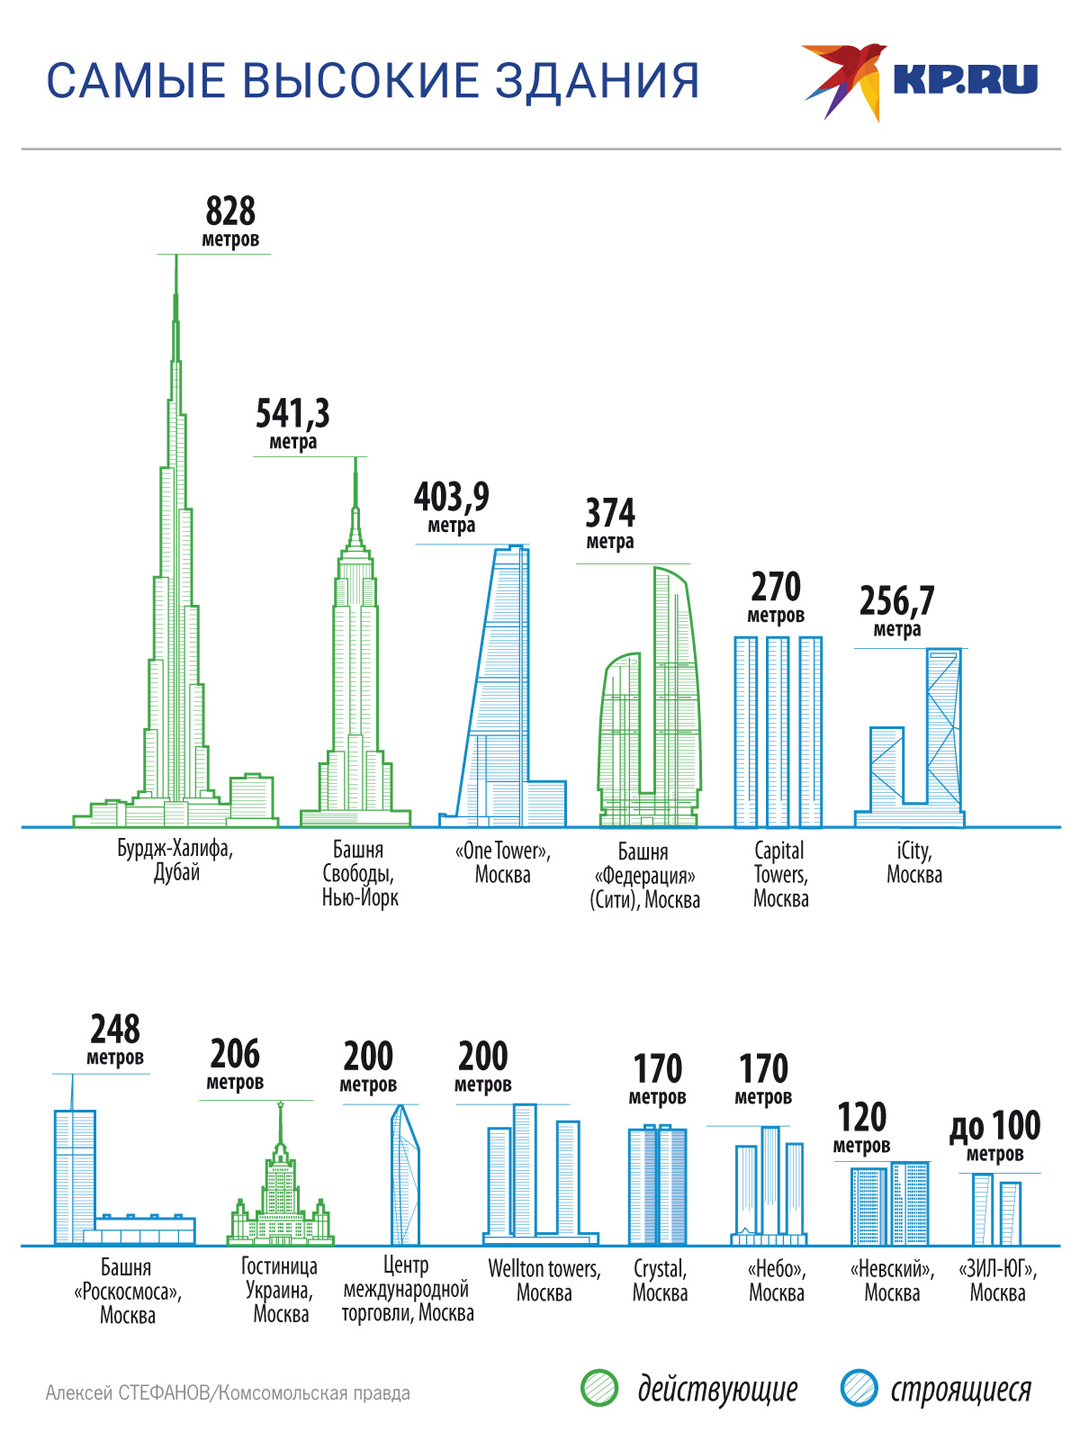 Сколько этажей в россии. Высота зданий Москва Сити в метрах и этажах. Самое высокое здание в Москве высота. Москва список самых высоких зданий Москвы. Самые высокие здания в мире сравнение.